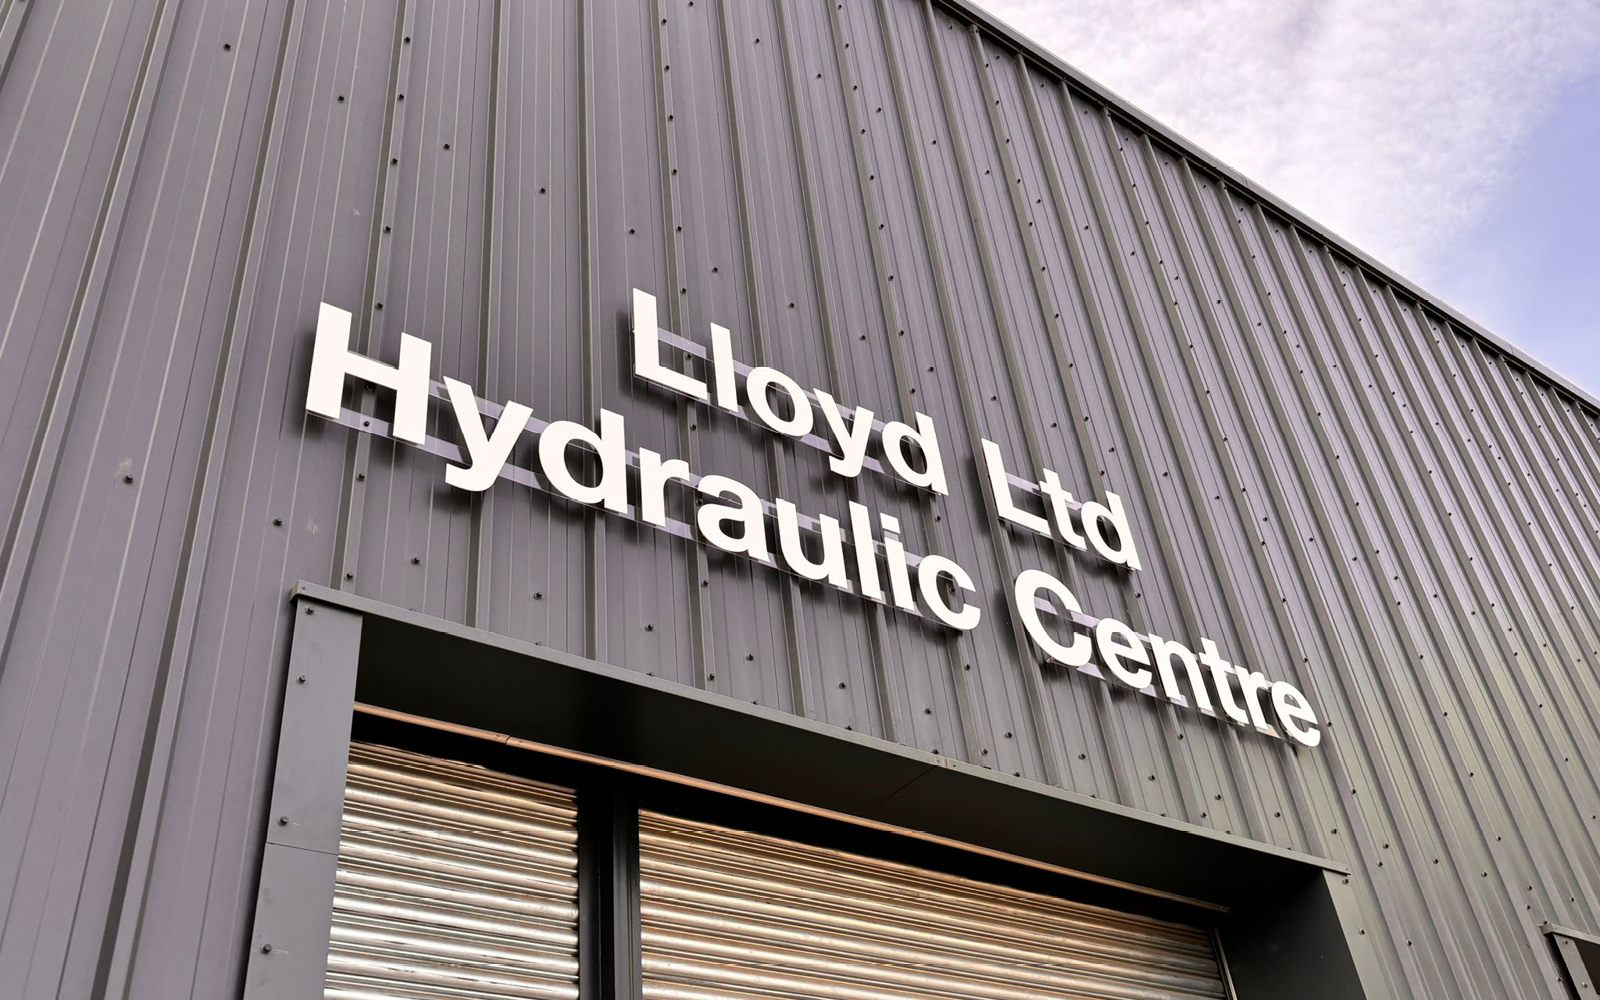 Lloyd Ltd Kelso Hydraulic Centre